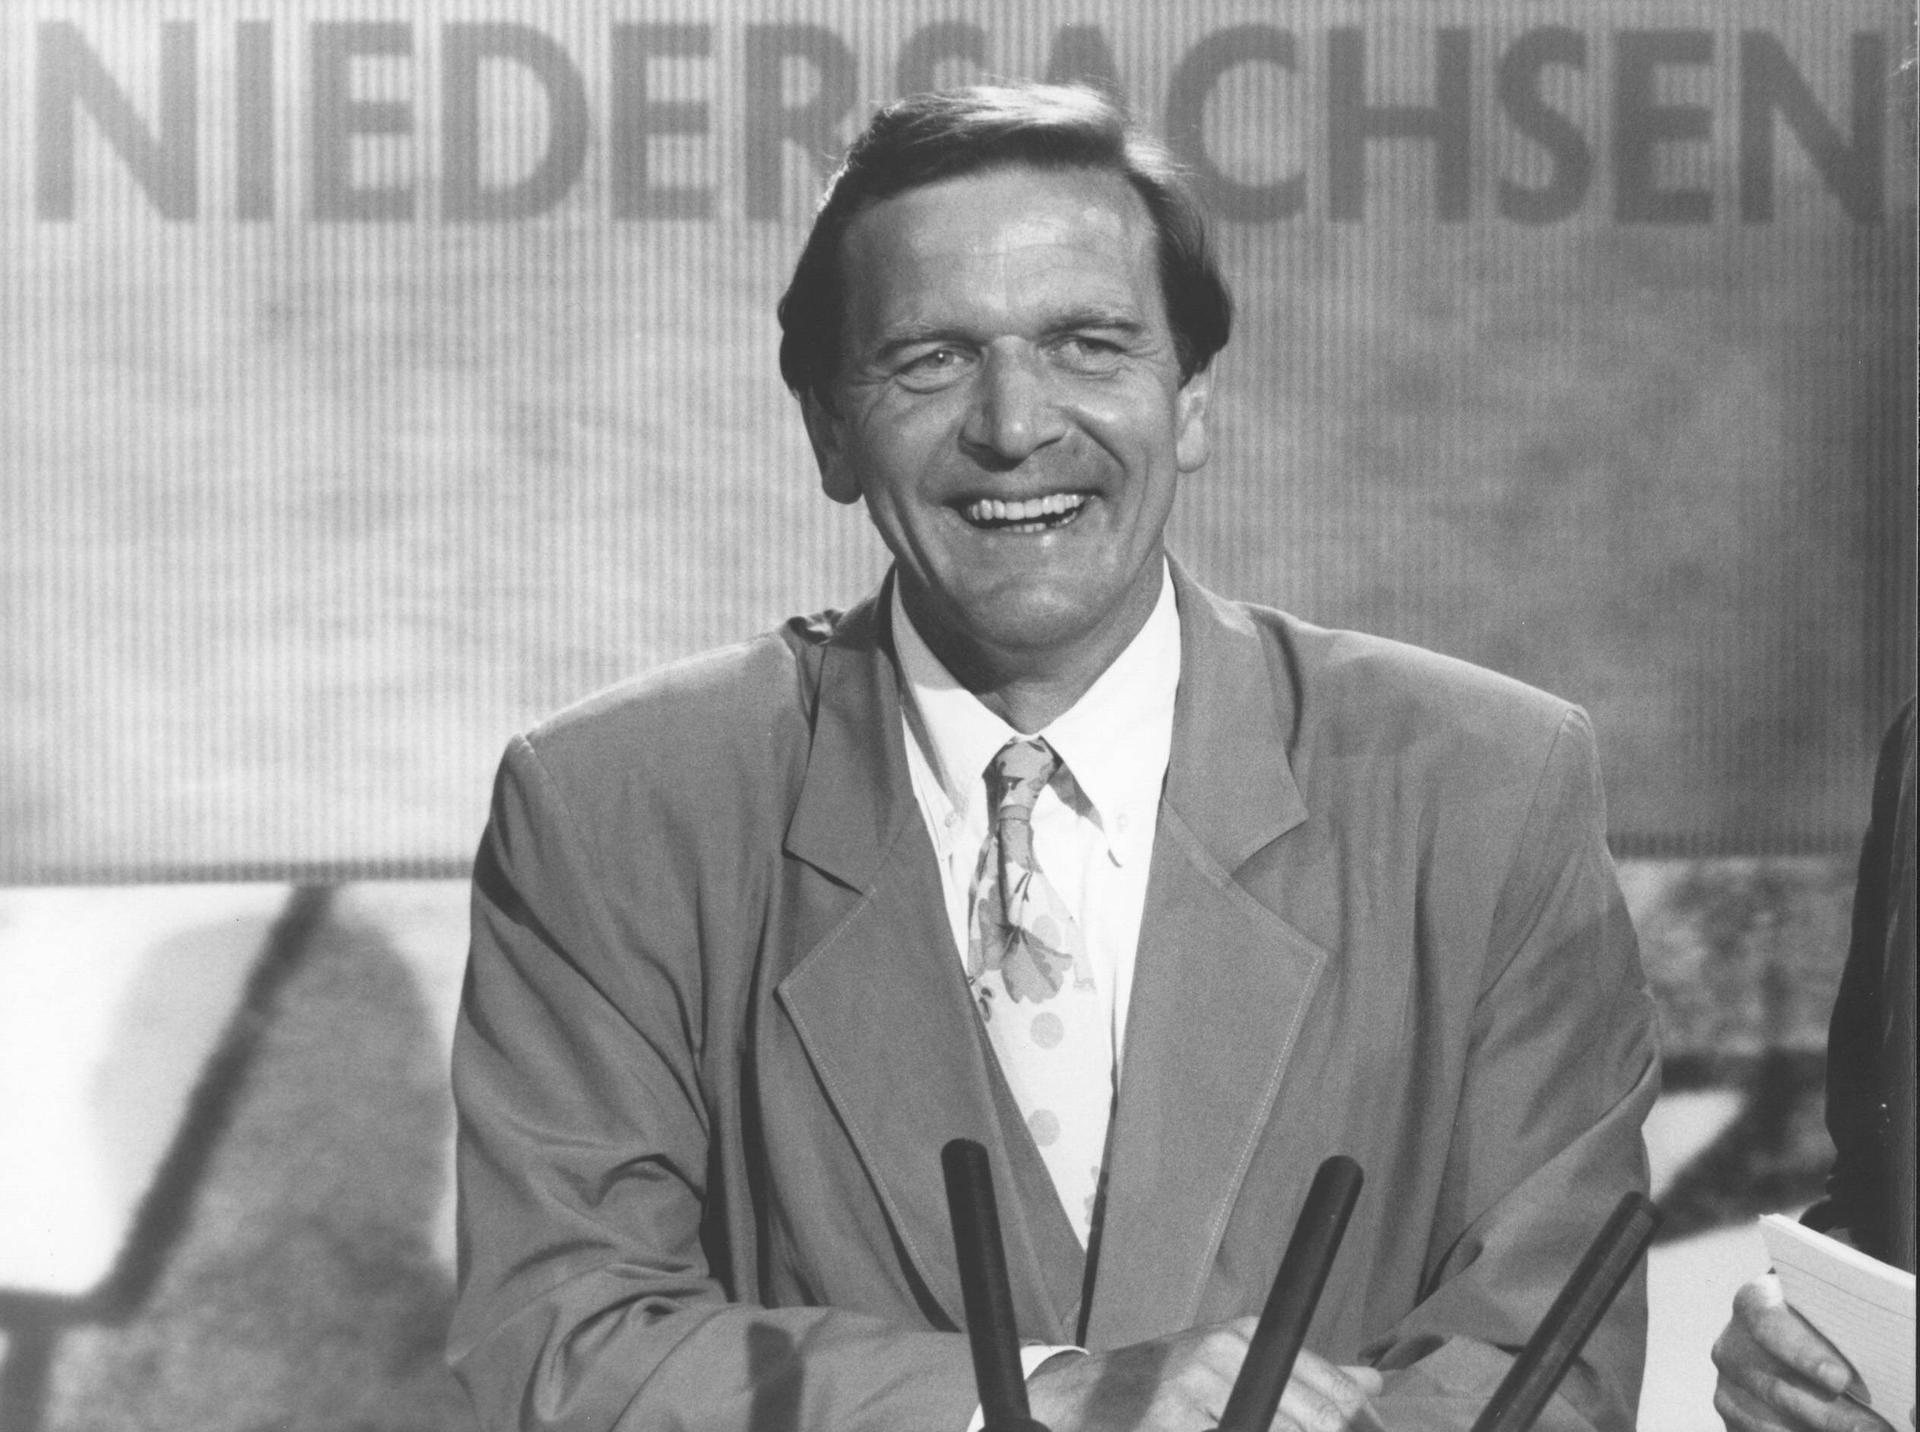 Mai 1990: Gerhard Schröder wird mithilfe der Grünen zum Ministerpräsidenten in Niedersachsen gewählt. Auch die nächsten Landtagswahlen kann er erfolgreich für sich entscheiden.